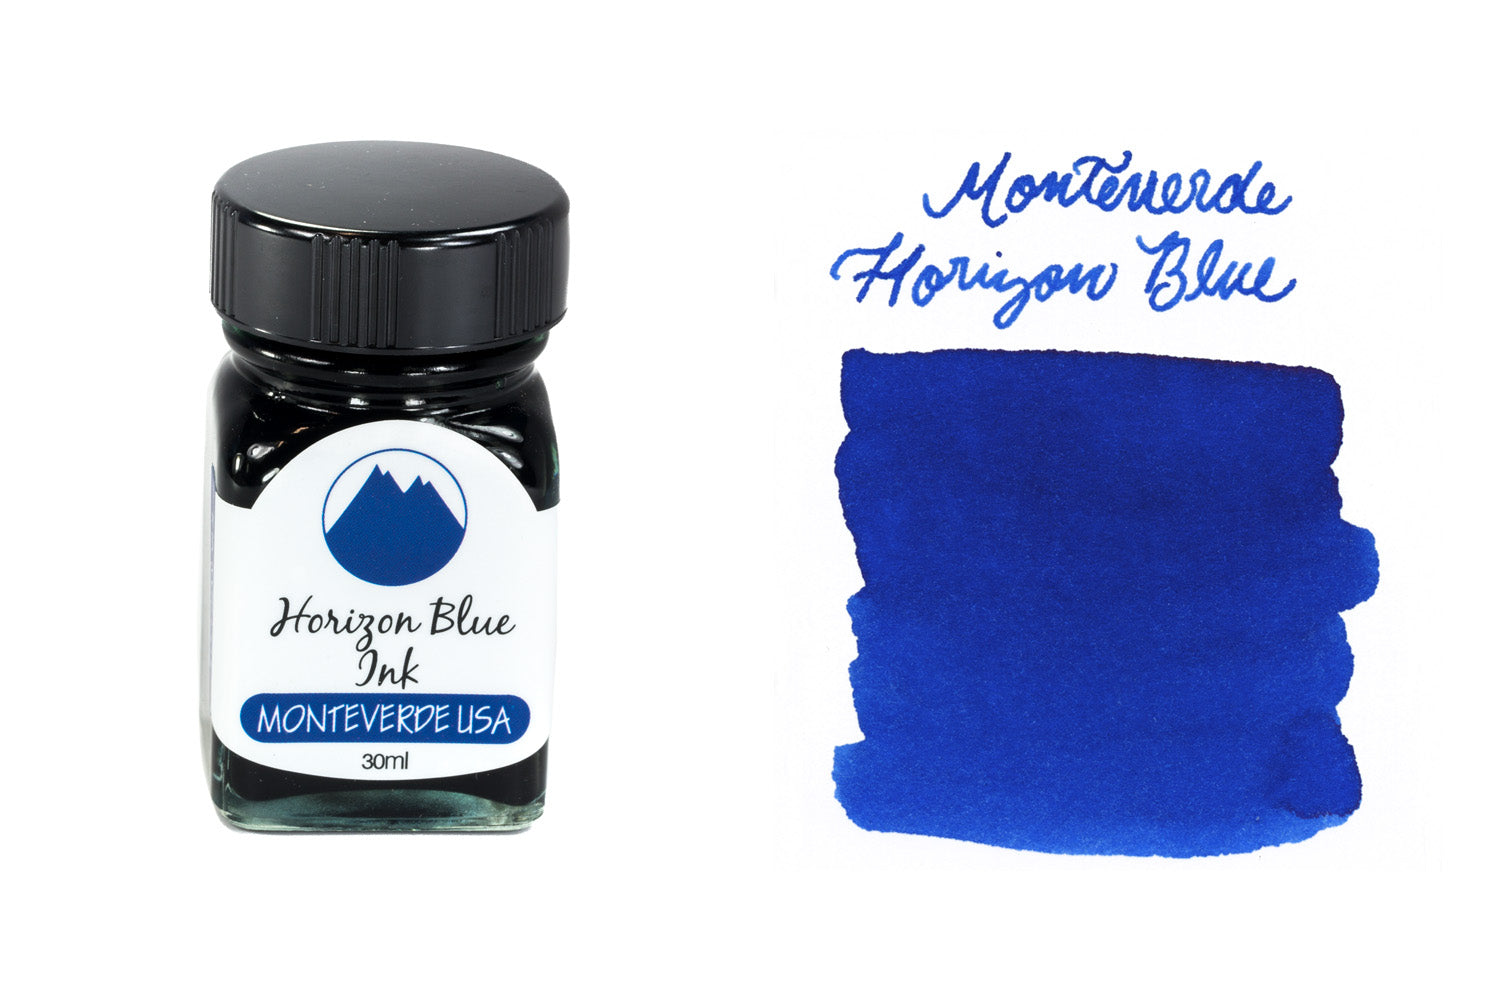 Monteverde Horizon Blue bottled fountain pen ink